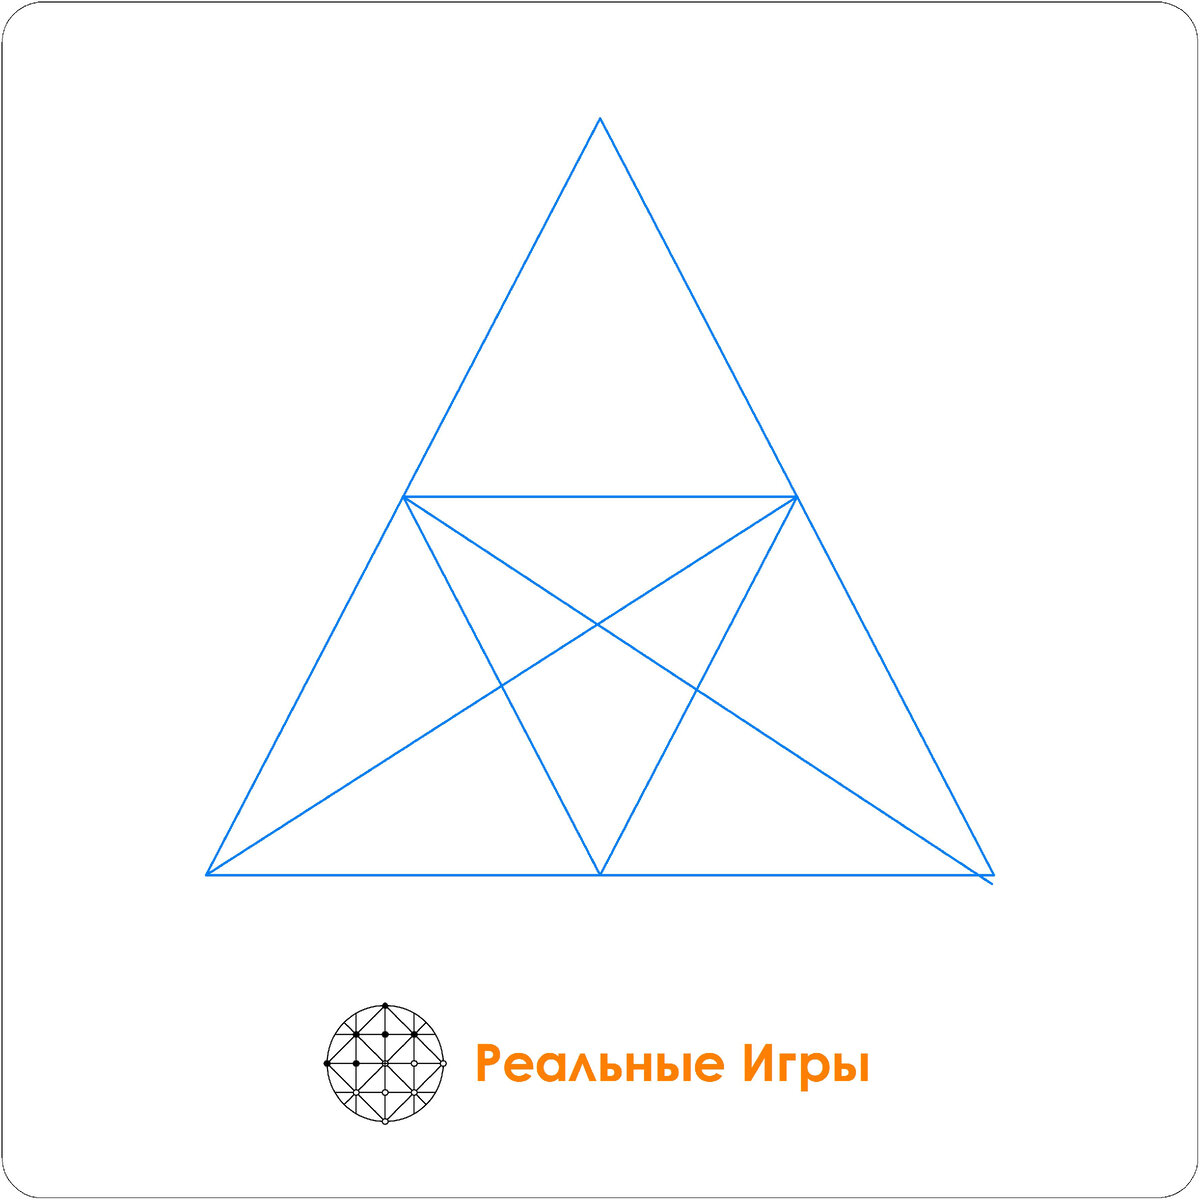 Сколько 🔼 треугольников изображено на рисунке? Тест на внимательность. | МЕГА ТЕСТ | Дзен